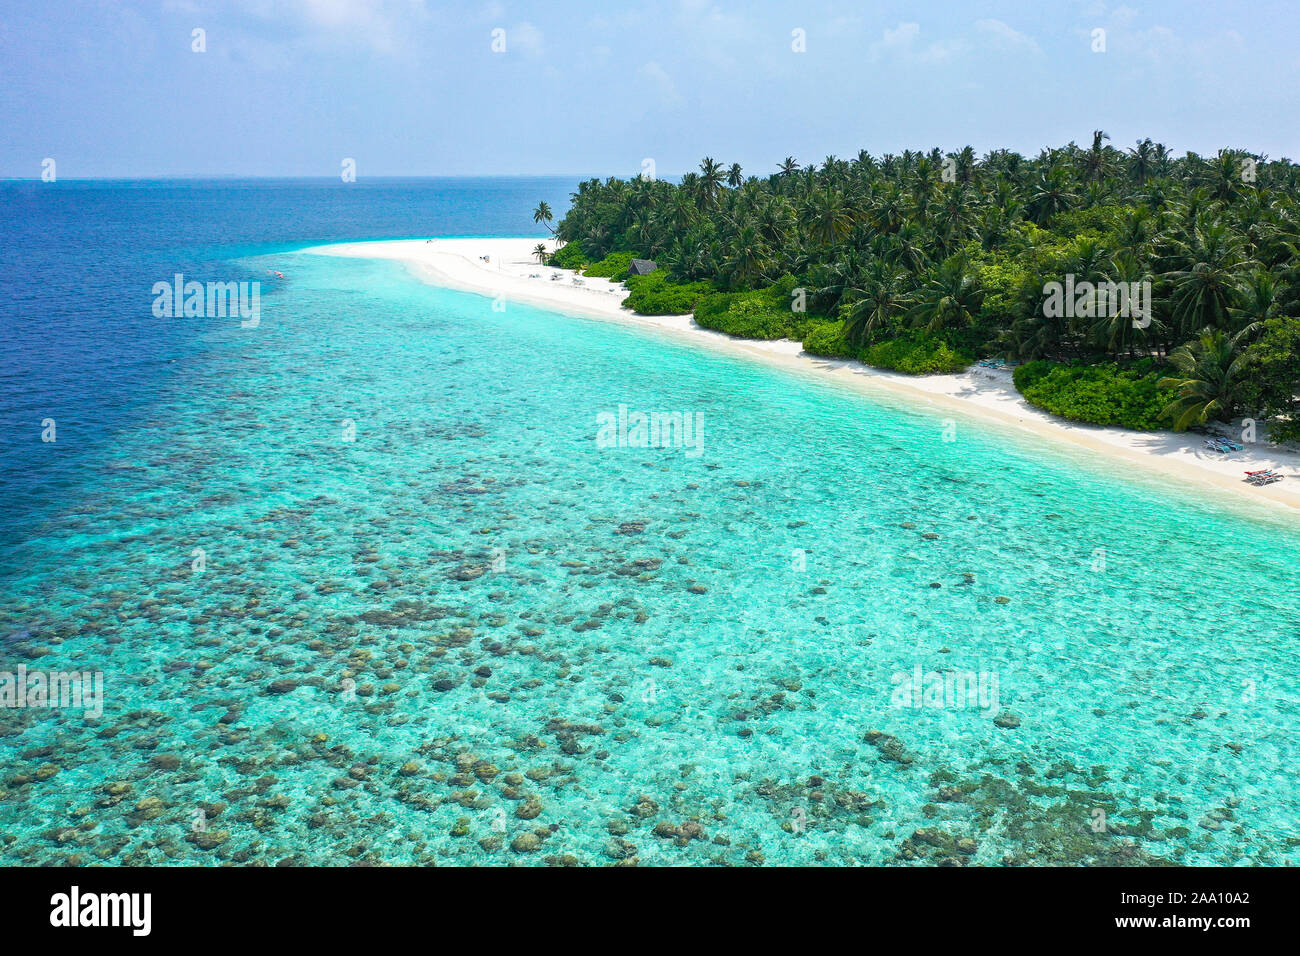 Vue aérienne avec vrombissement d'une île exotique tropical paradise avec une eau cristalline turquoise et plage de sable blanc pur Banque D'Images